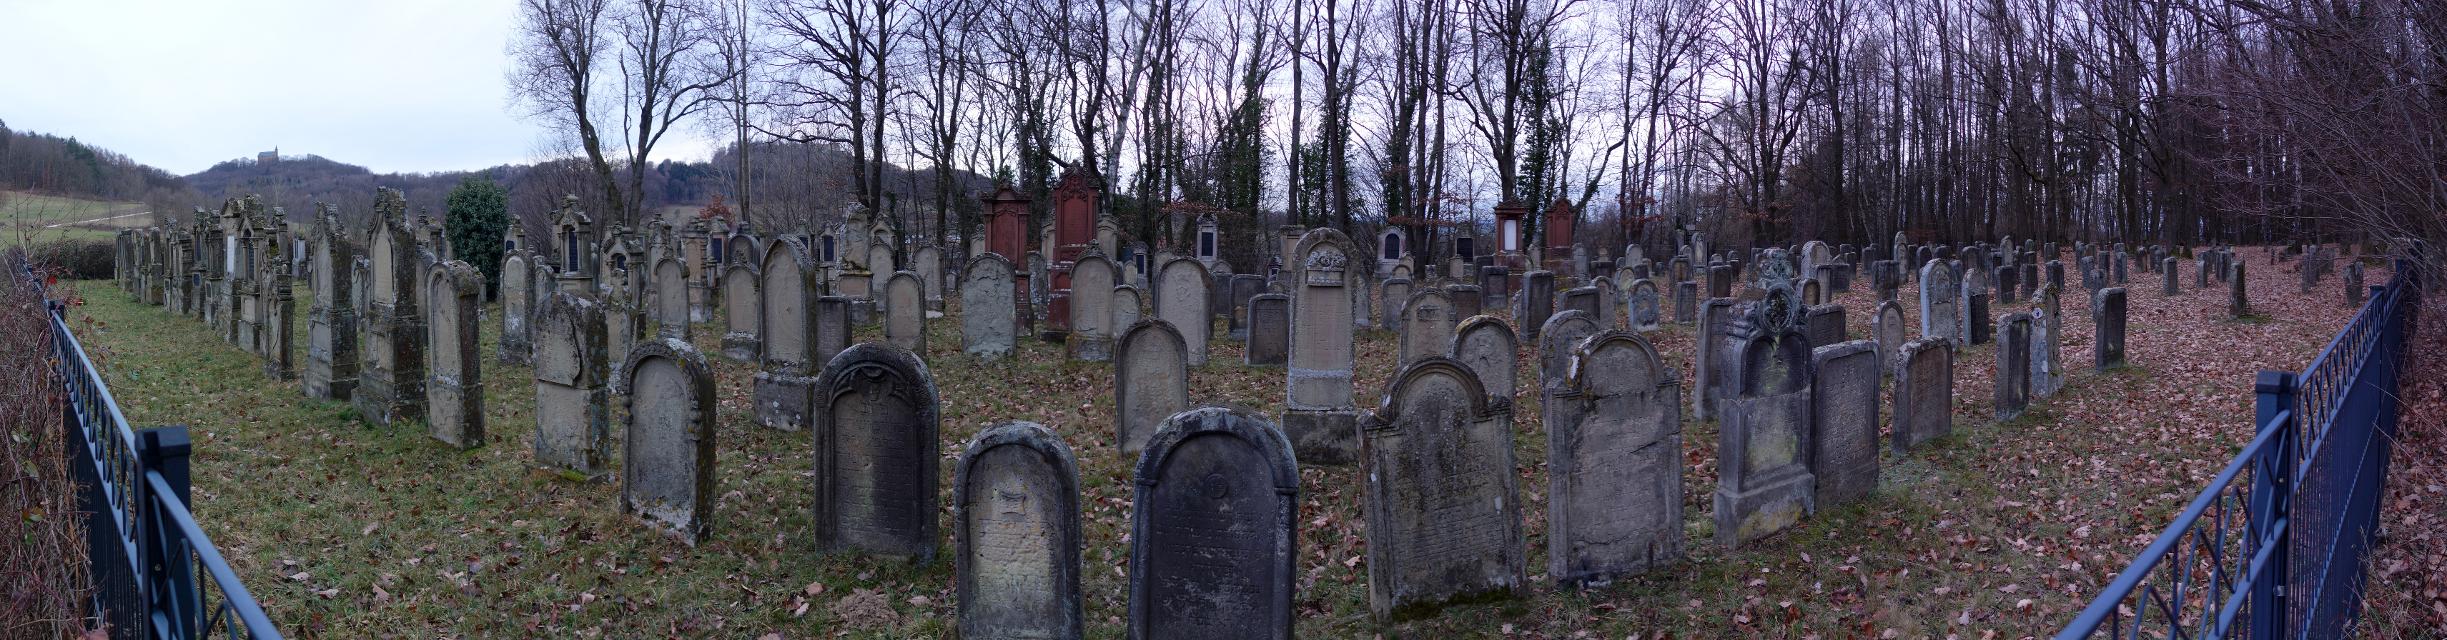 Der Jüdische Friedhof im Wald zwischen Zeckendorf und Demmelsdorf wurde bereits um 1617 errichtet. Heute sind noch etwa 598 Grabsteine vorhanden, die von 1991 bis 1993 dokumentiert wurden. Der älteste Grabstein ist von 1637.Damals setzten die Bamberger Juden ihre Verstorbenen hier bei. ...